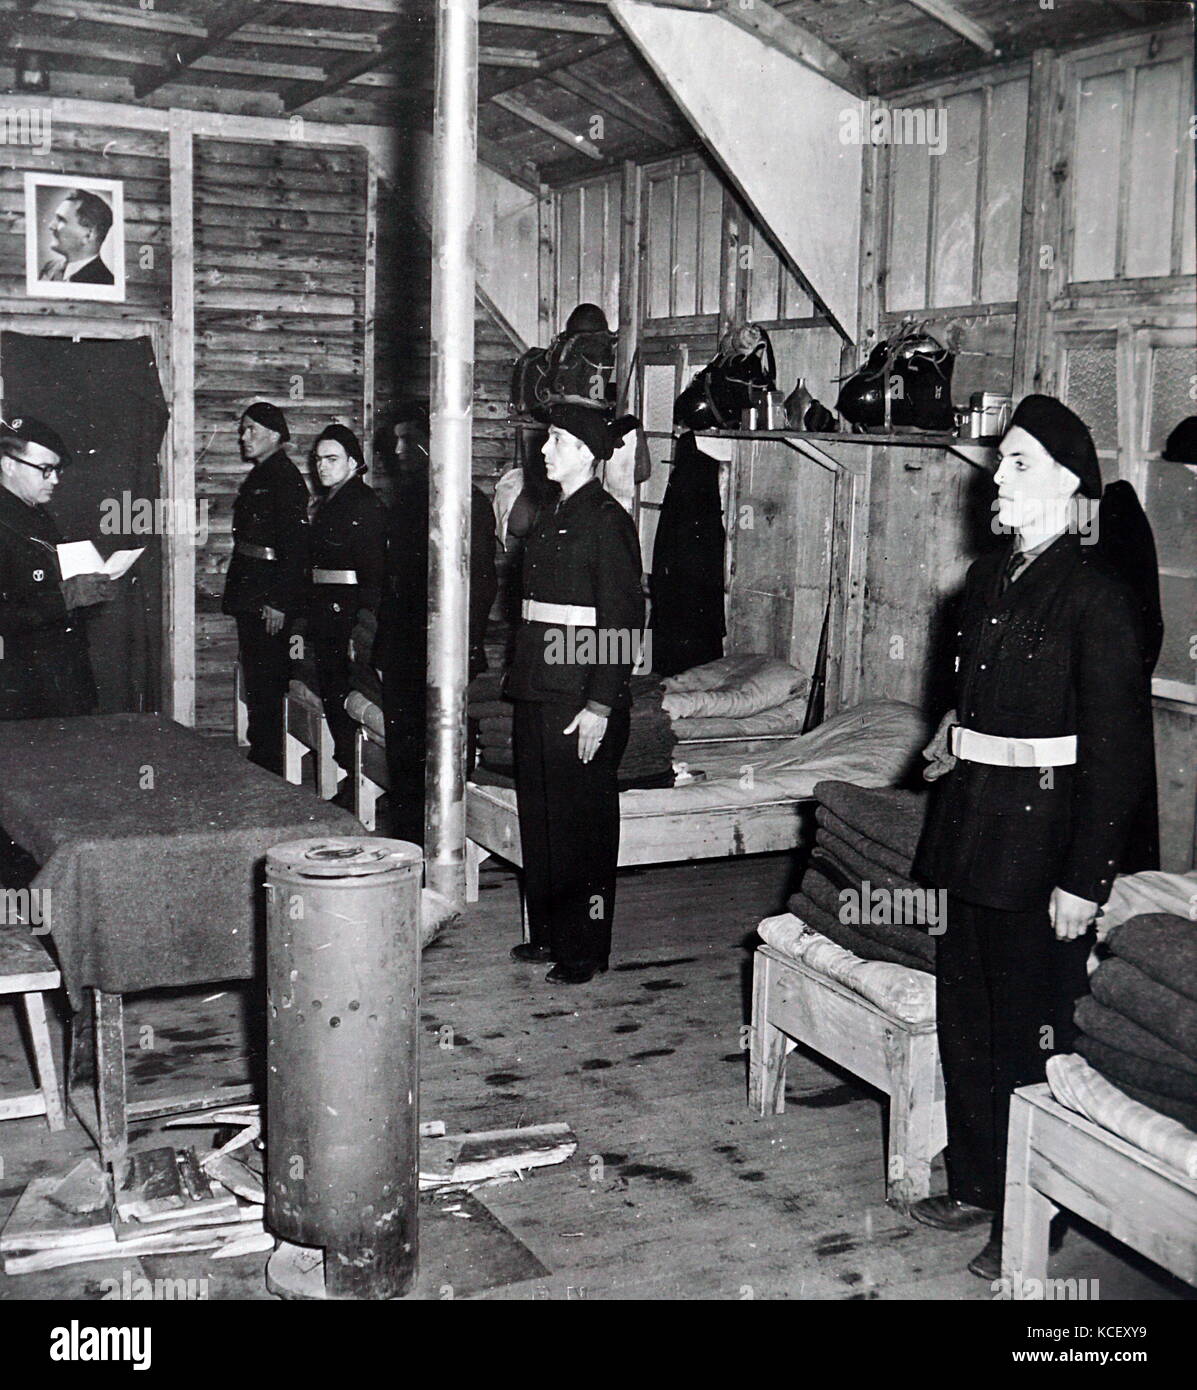 Photographie de soldats français prier dans leurs casernes en France occupée pendant la Seconde Guerre mondiale. En date du 20e siècle Banque D'Images